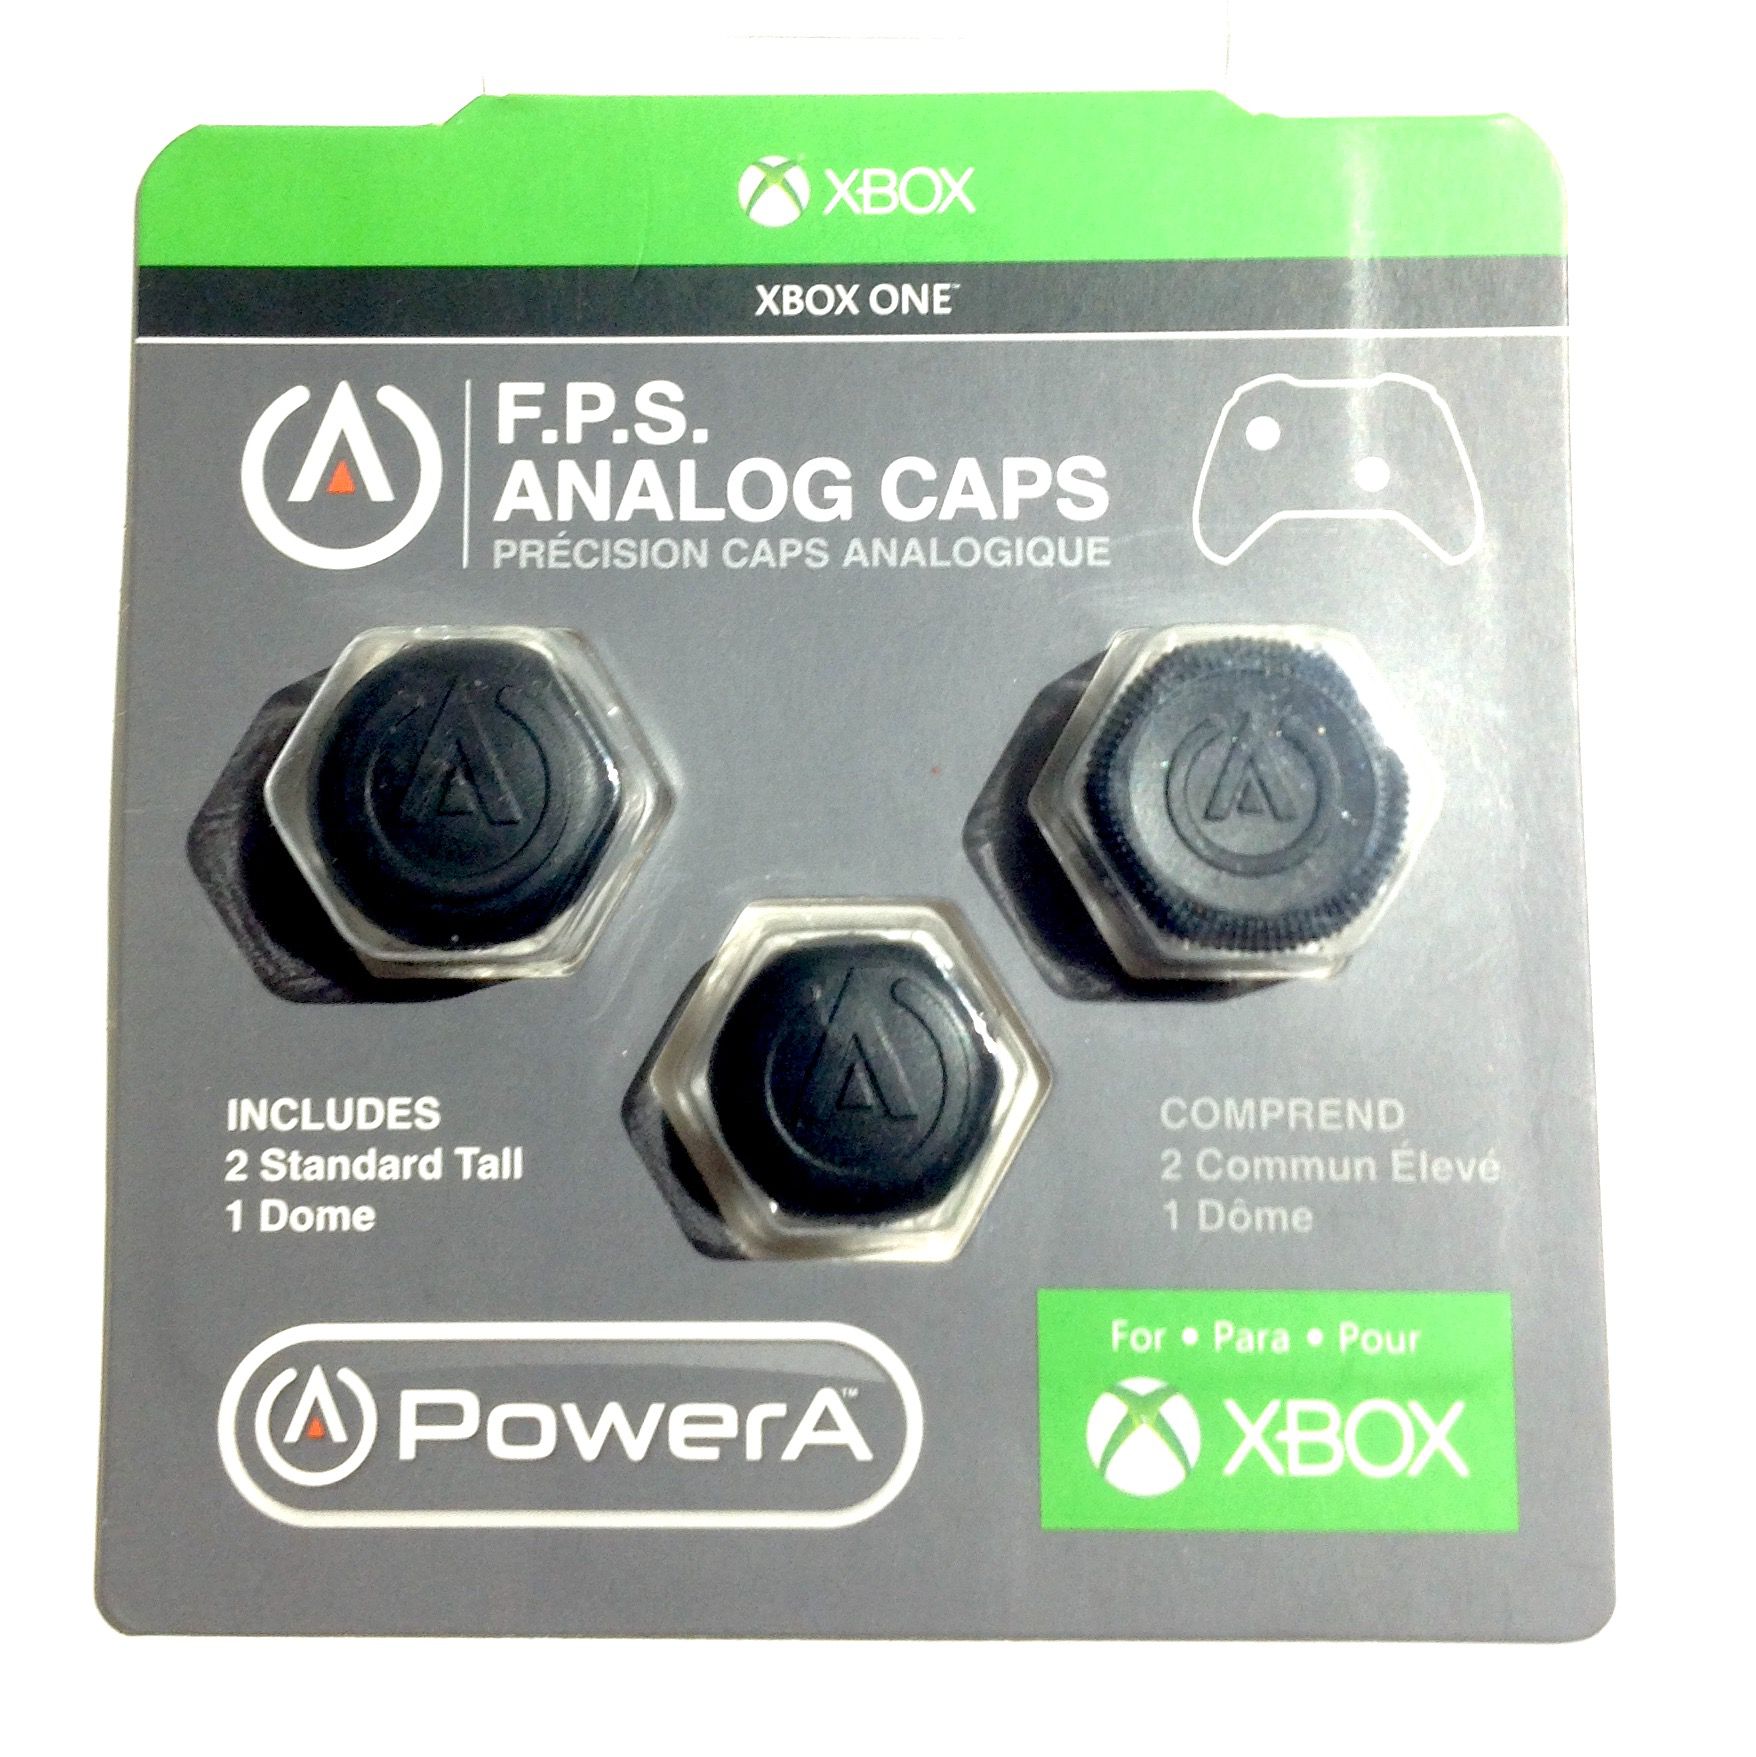 FPS Analog Caps Xbox One